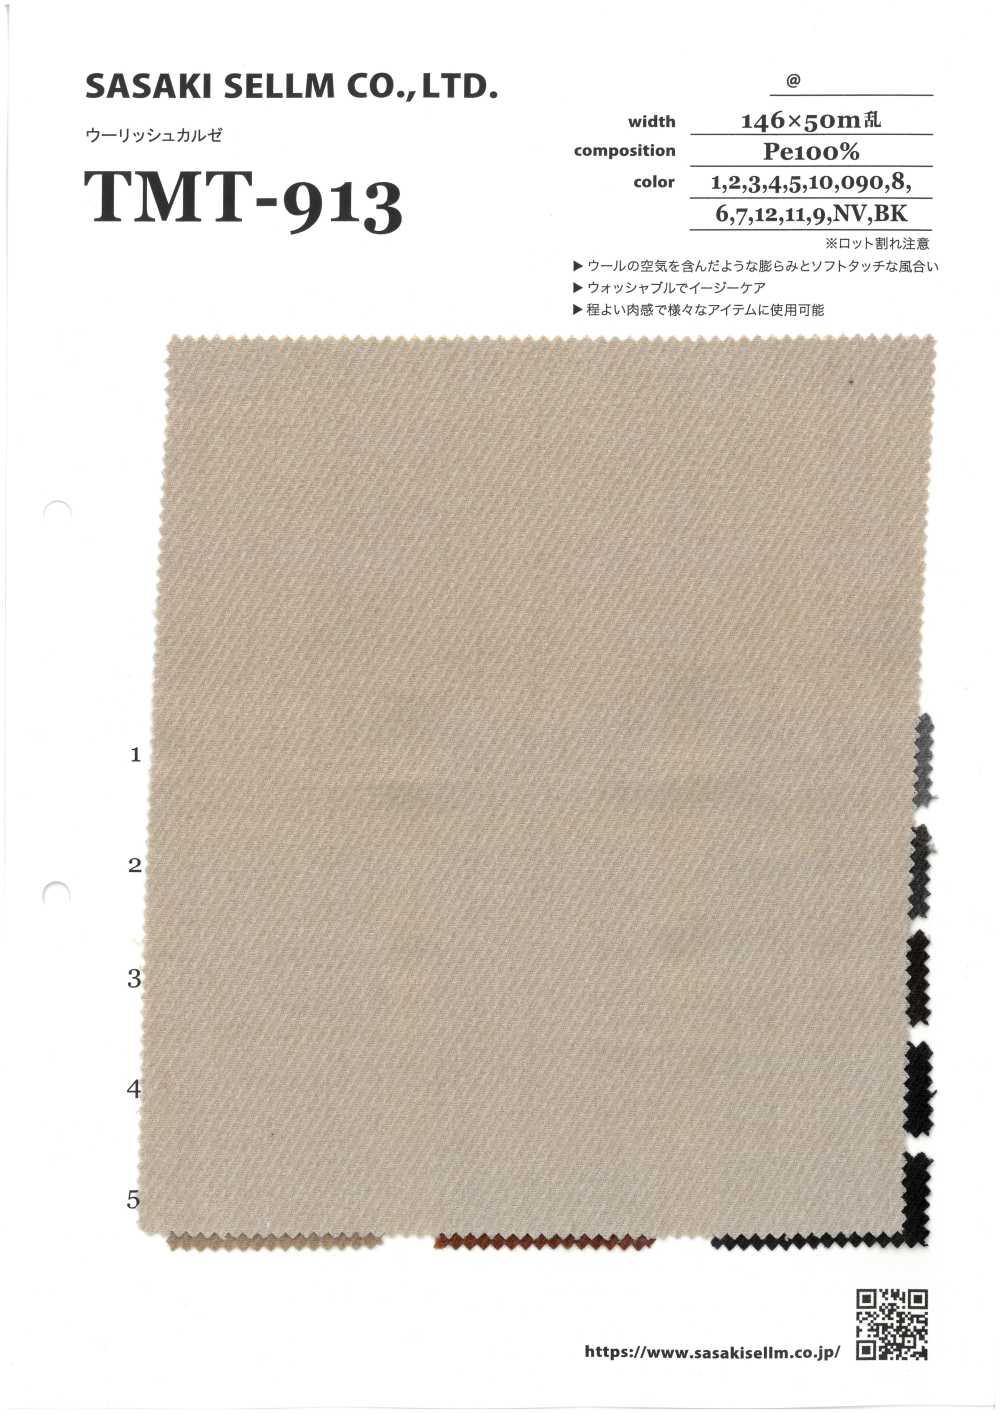 TMT-913 Kersey[Textilgewebe] SASAKISELLM